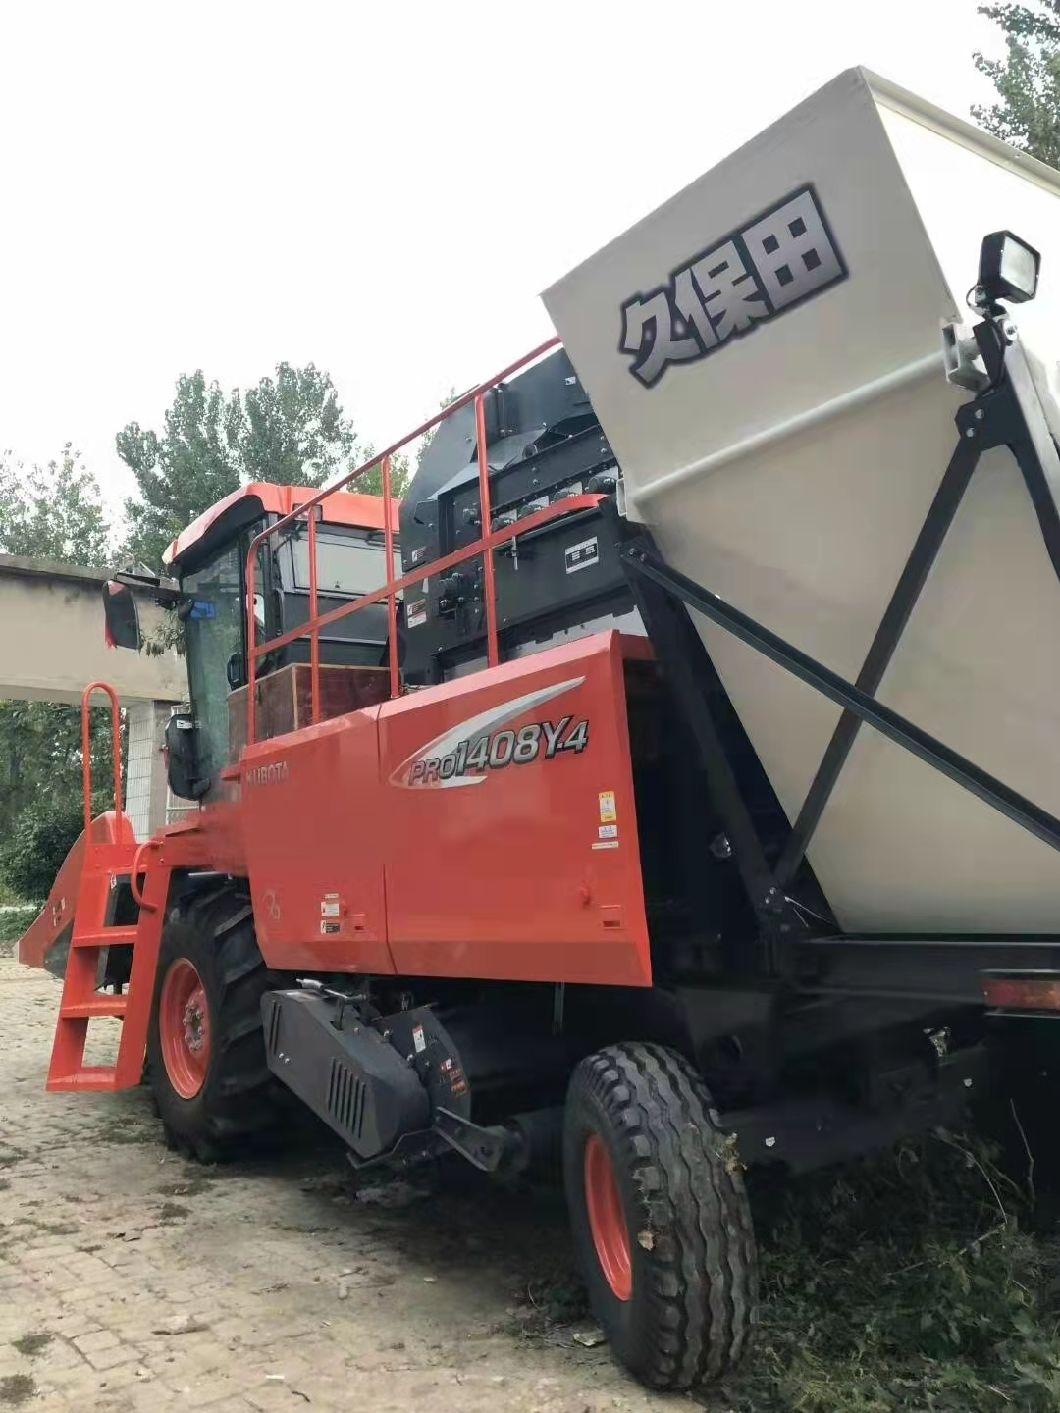 Used Kubota Harvester Dry Land Farm Agriculture Harvesters Wheel Full Feed Combine Harvesting Machine